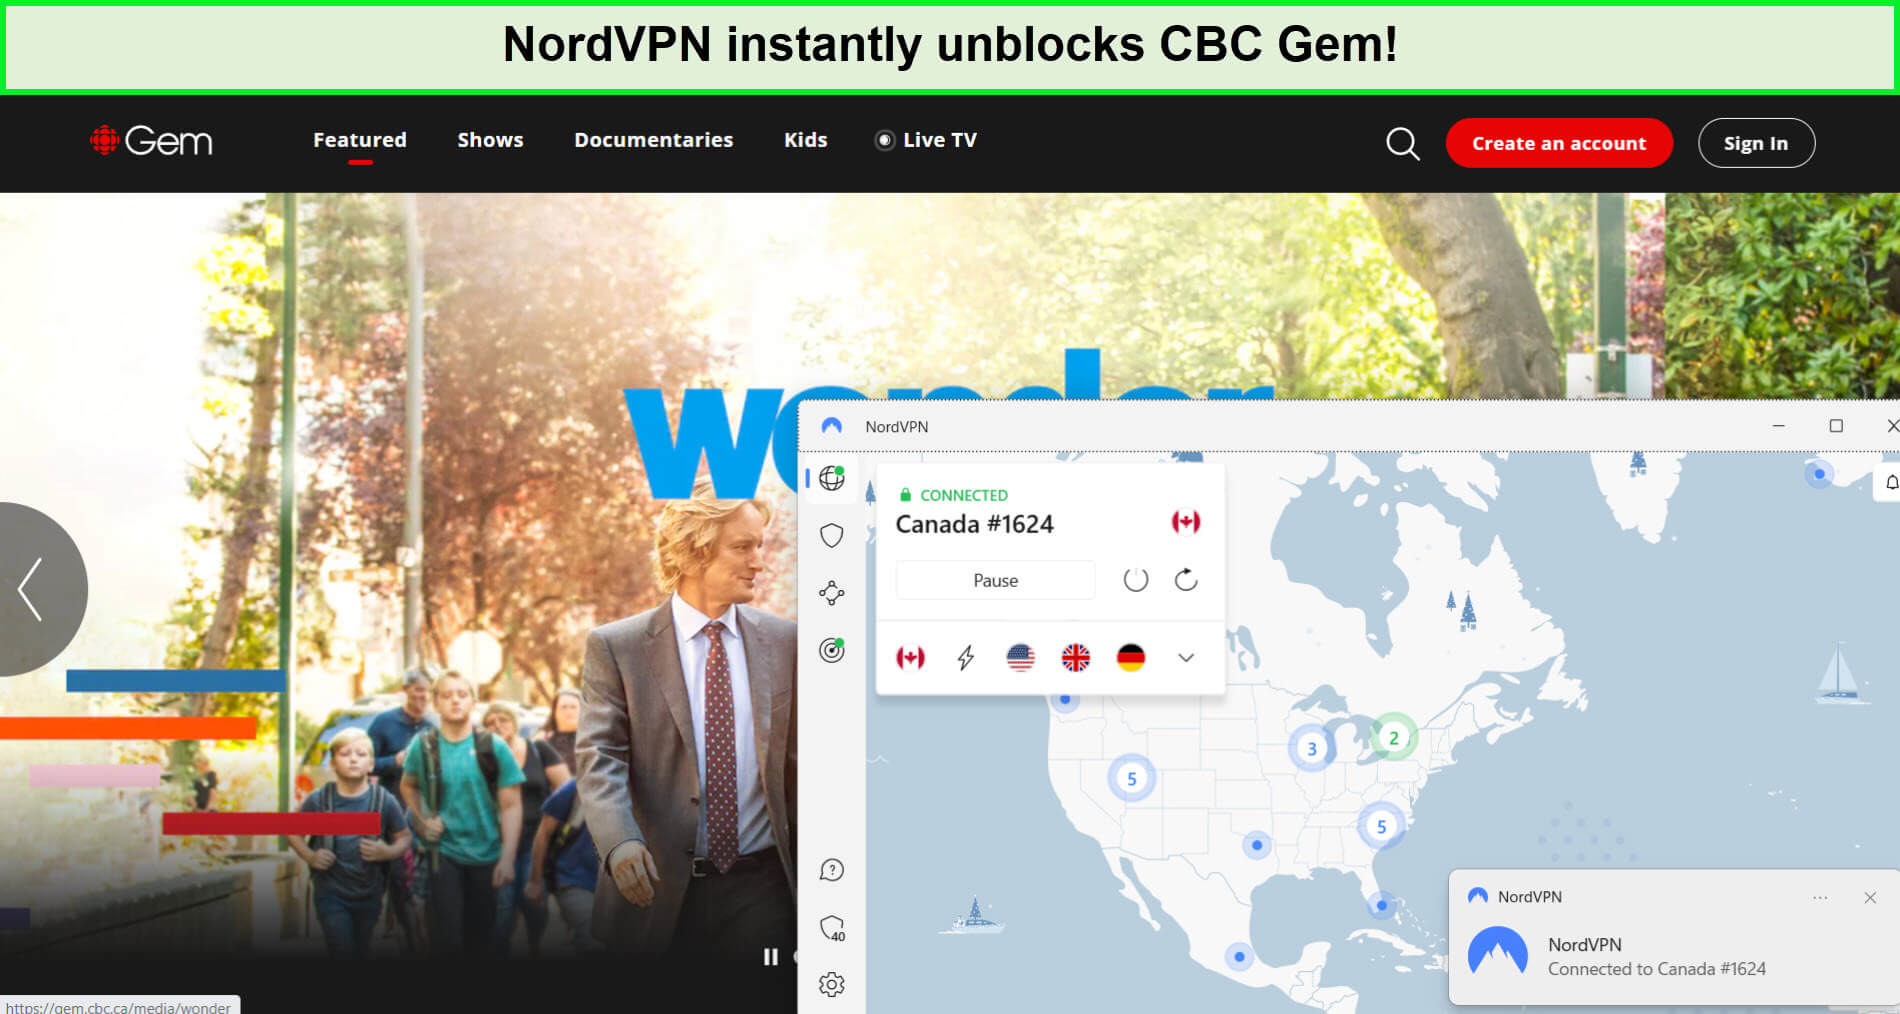 nordvpn-unblocks-cbc-gem-in-philippines